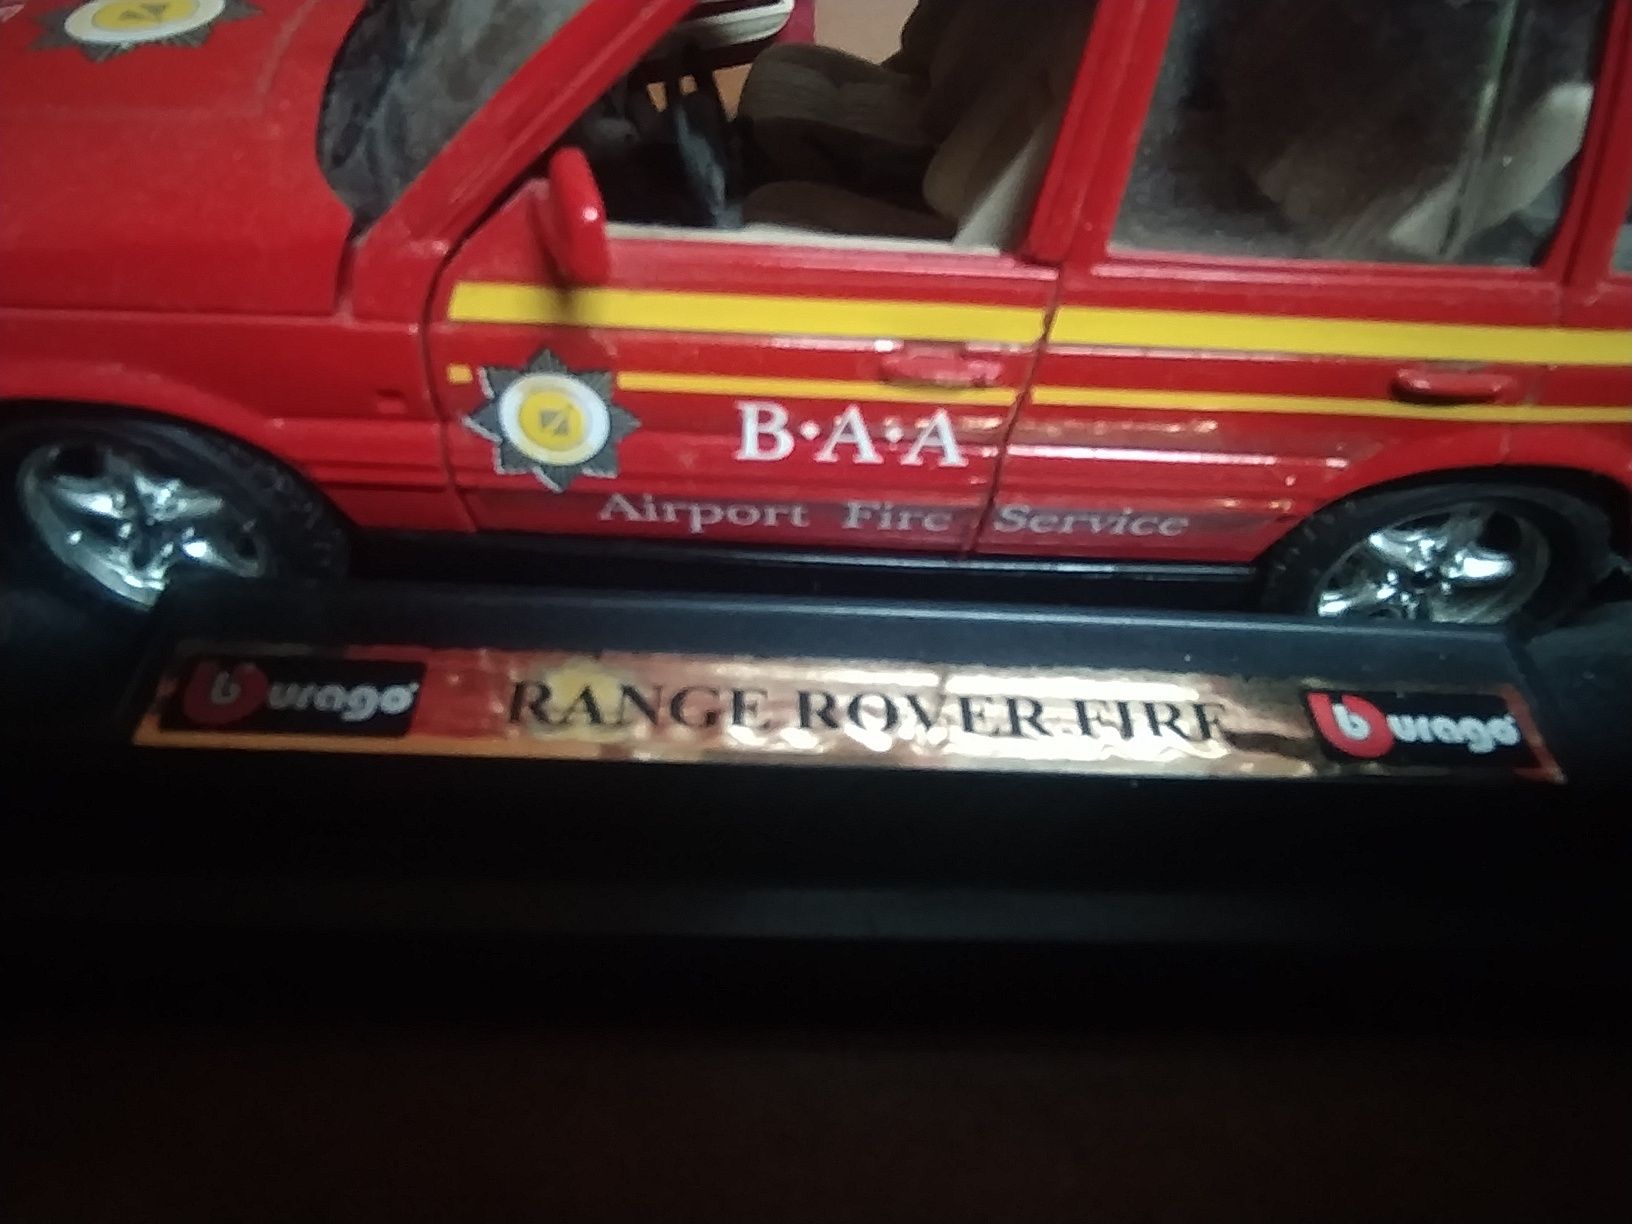 Miniatura automóvel colecionável, 20 cm, marca Burago Range Rover Fire